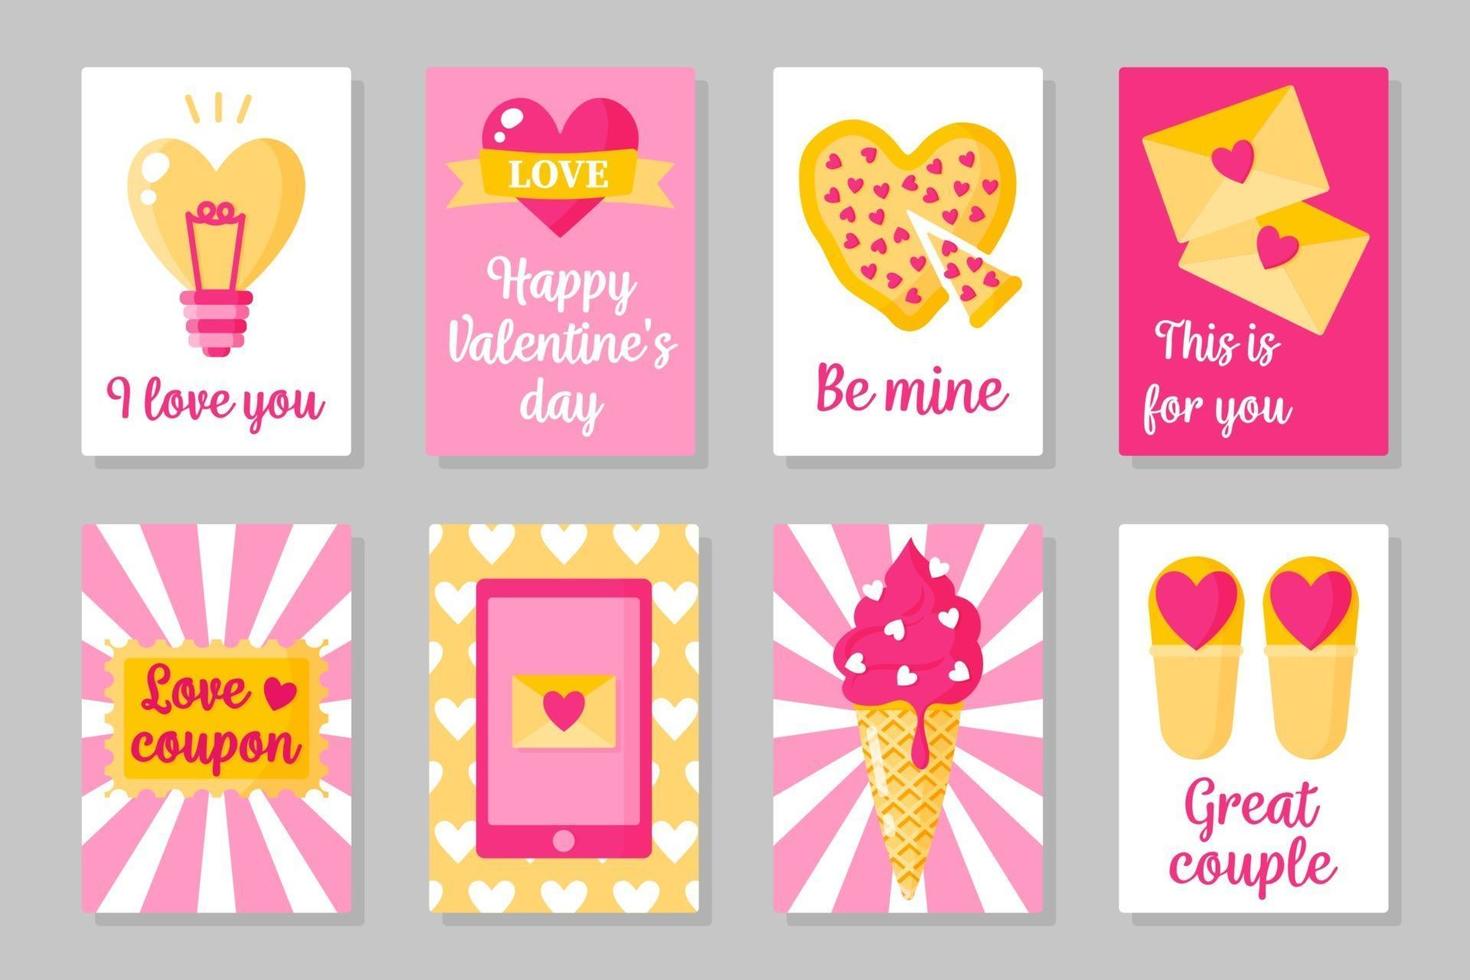 ensemble de cartes colorées roses, blanches et jaunes pour la Saint-Valentin ou le mariage. design plat isolé de vecteur